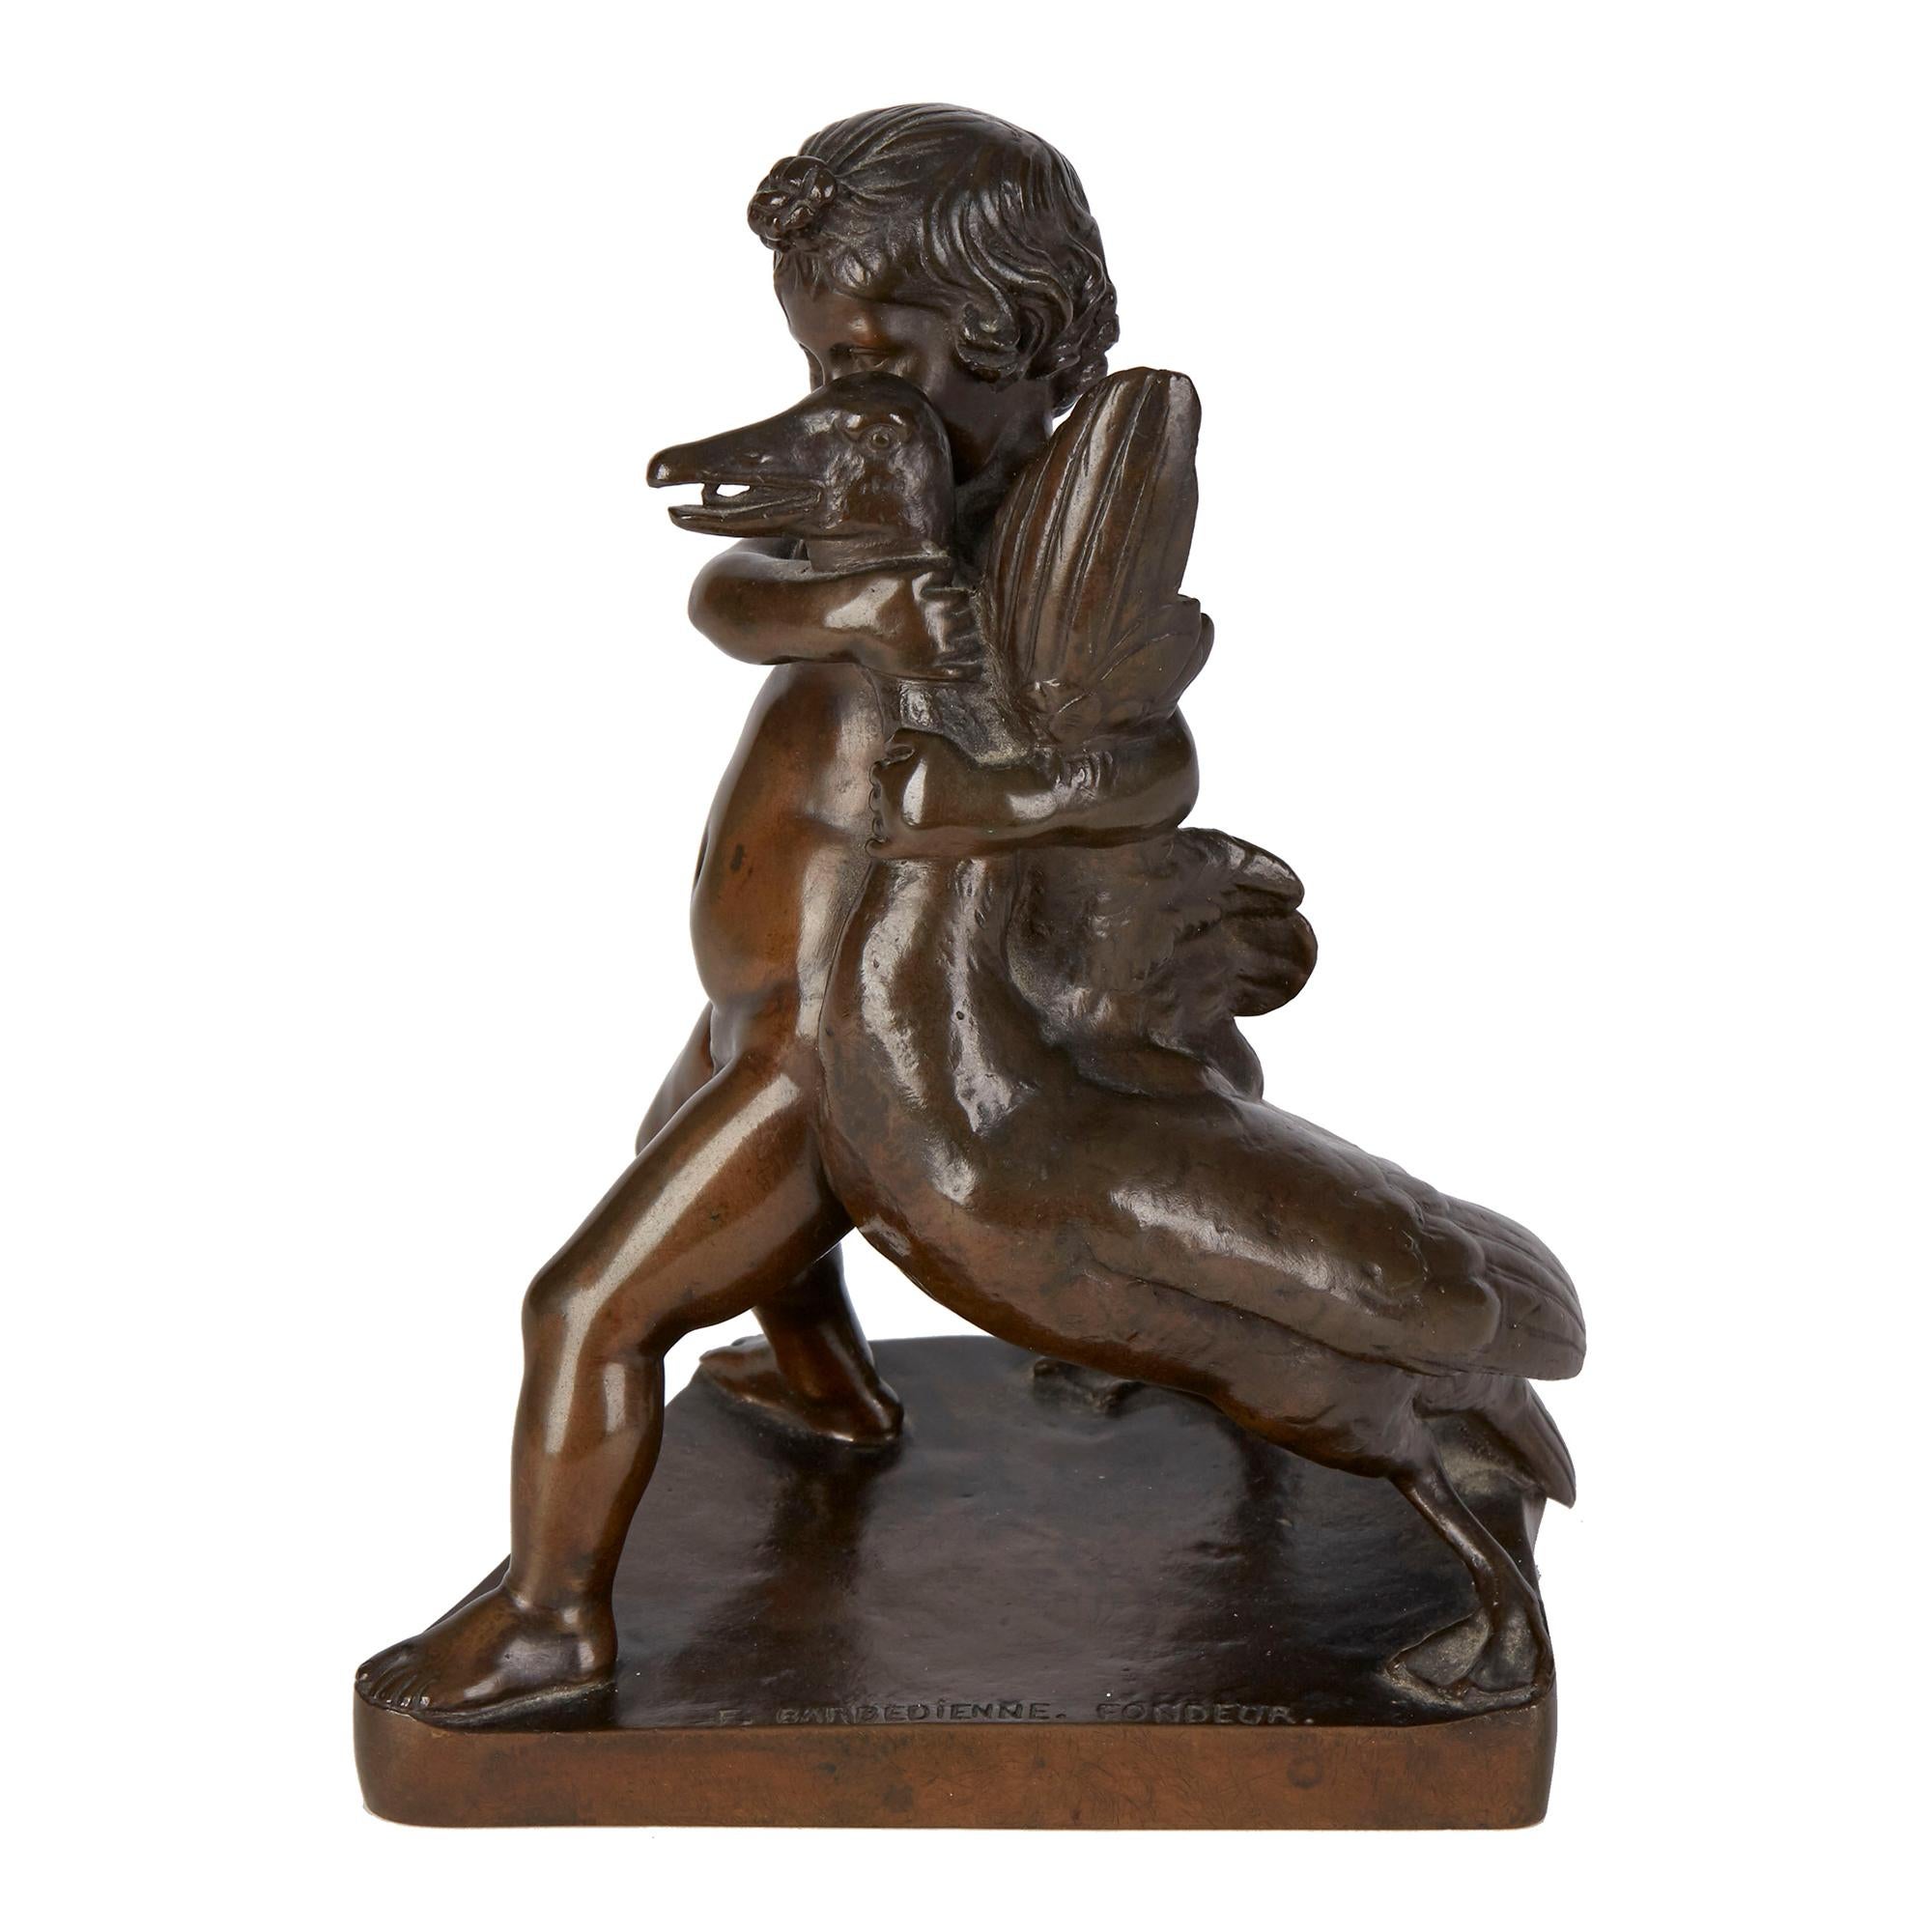 Un bronze ancien français finement patiné de Ferdinand Barbedienne représentant un jeune garçon caressant une grande oie. La figure est montée sur une base angulaire et façonnée et est signée 'F. BARBEDIENNE. FONDEUR.